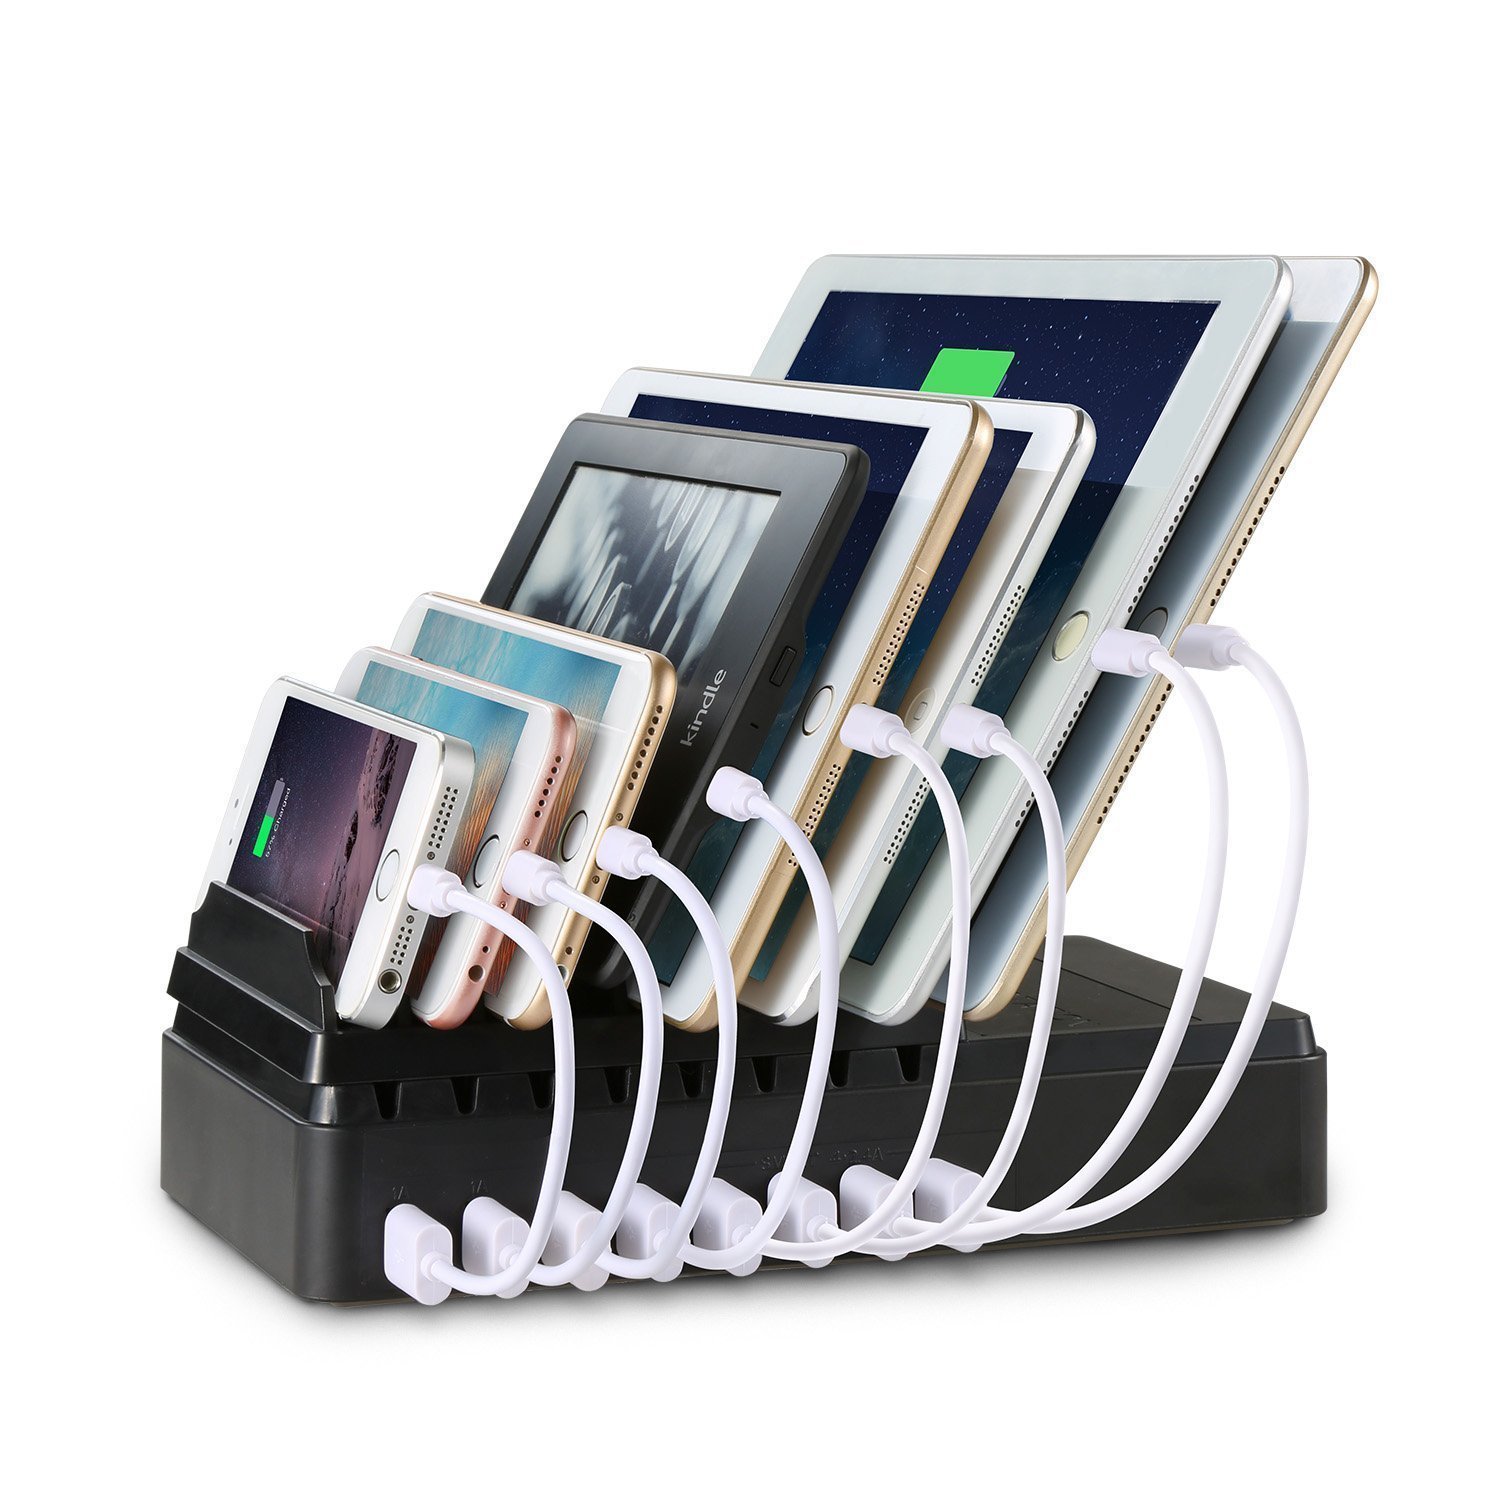 Maxi base di ricarica per 8 dispositivi in contemporanea